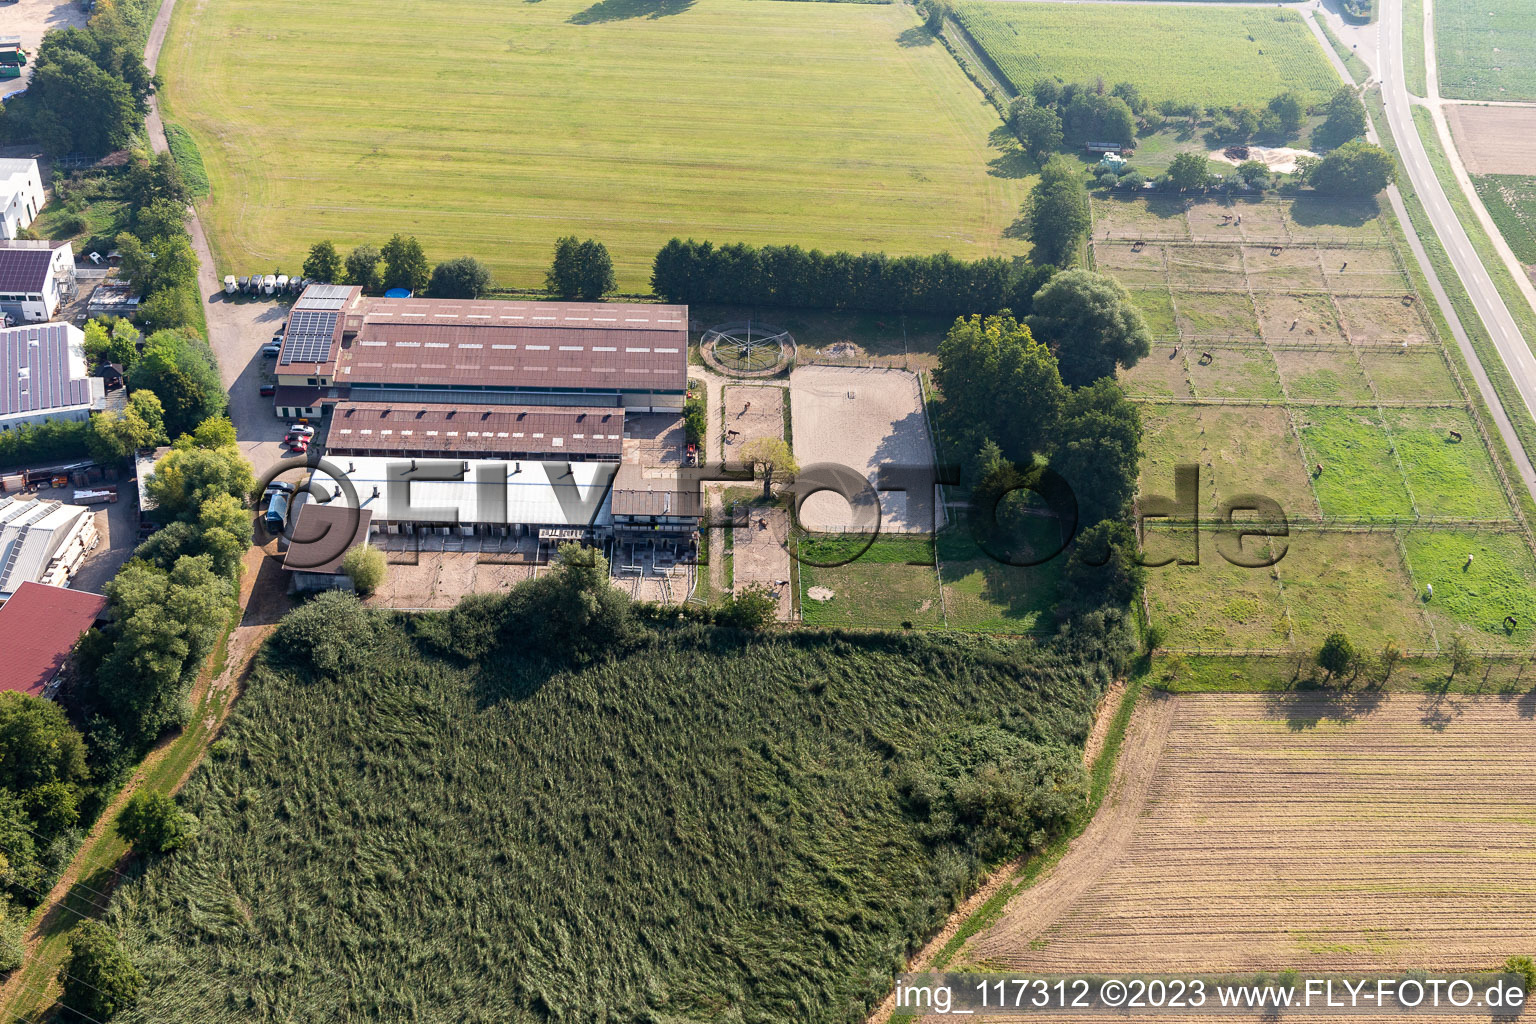 Vue aérienne de Boutique de la ferme de Kerth à le quartier Minderslachen in Kandel dans le département Rhénanie-Palatinat, Allemagne